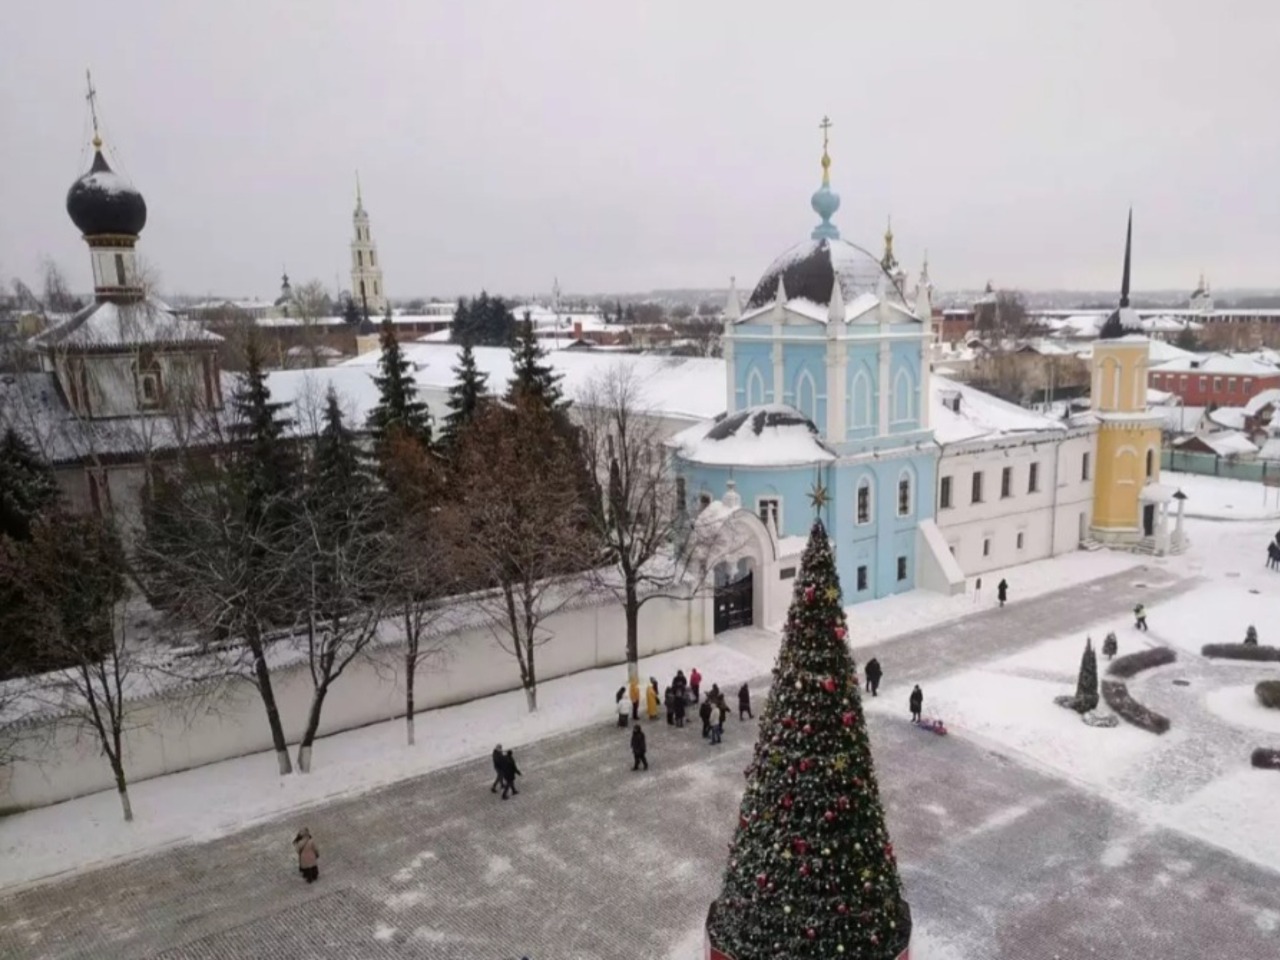 Прогулка по Коломенскому кремлю и Посаду | Цена 2500₽, отзывы, описание экскурсии